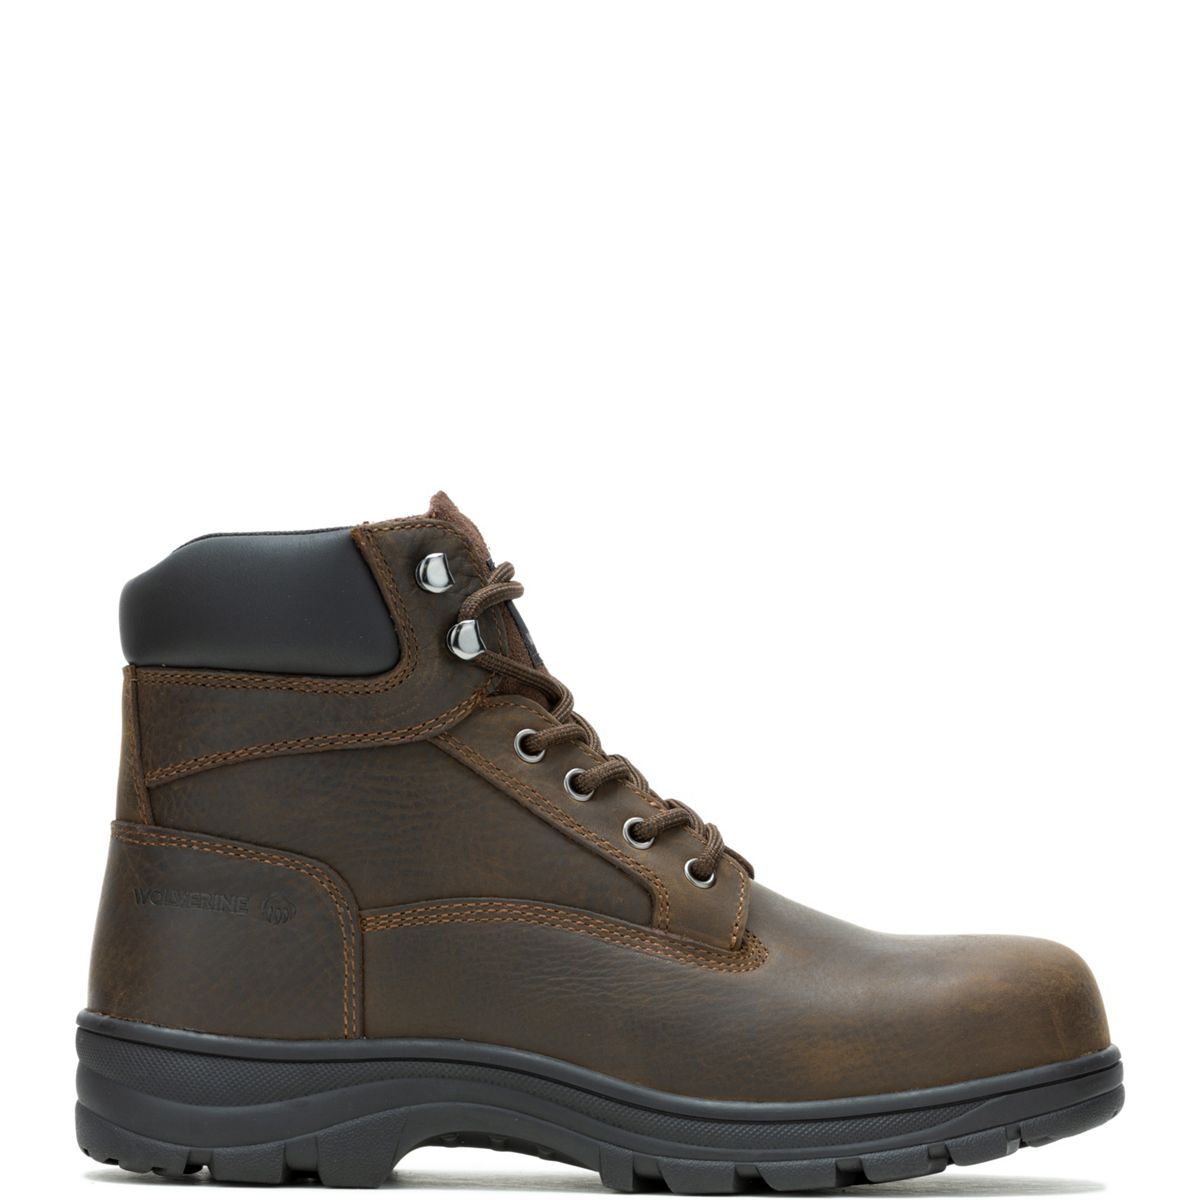 Carlsbad 6" Steel-Toe Work Boot, Brown, dynamic 1